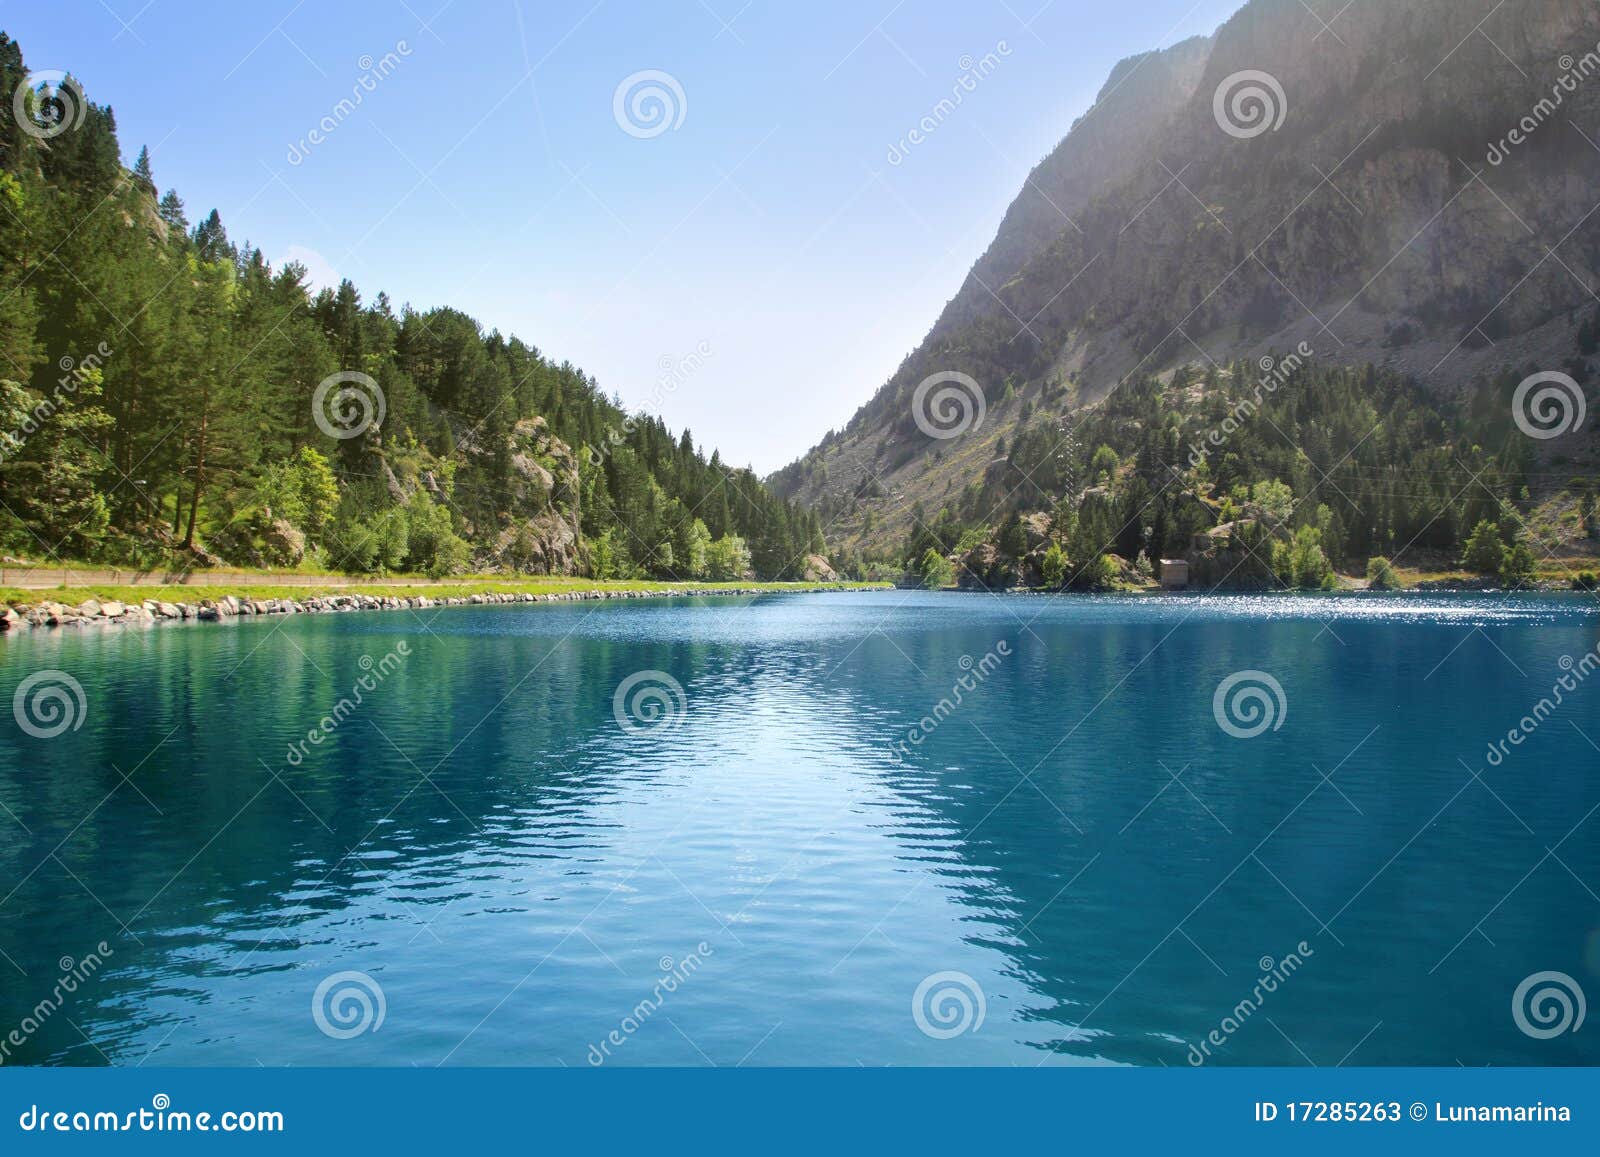 panticosa balneary lake pyrenees huesca